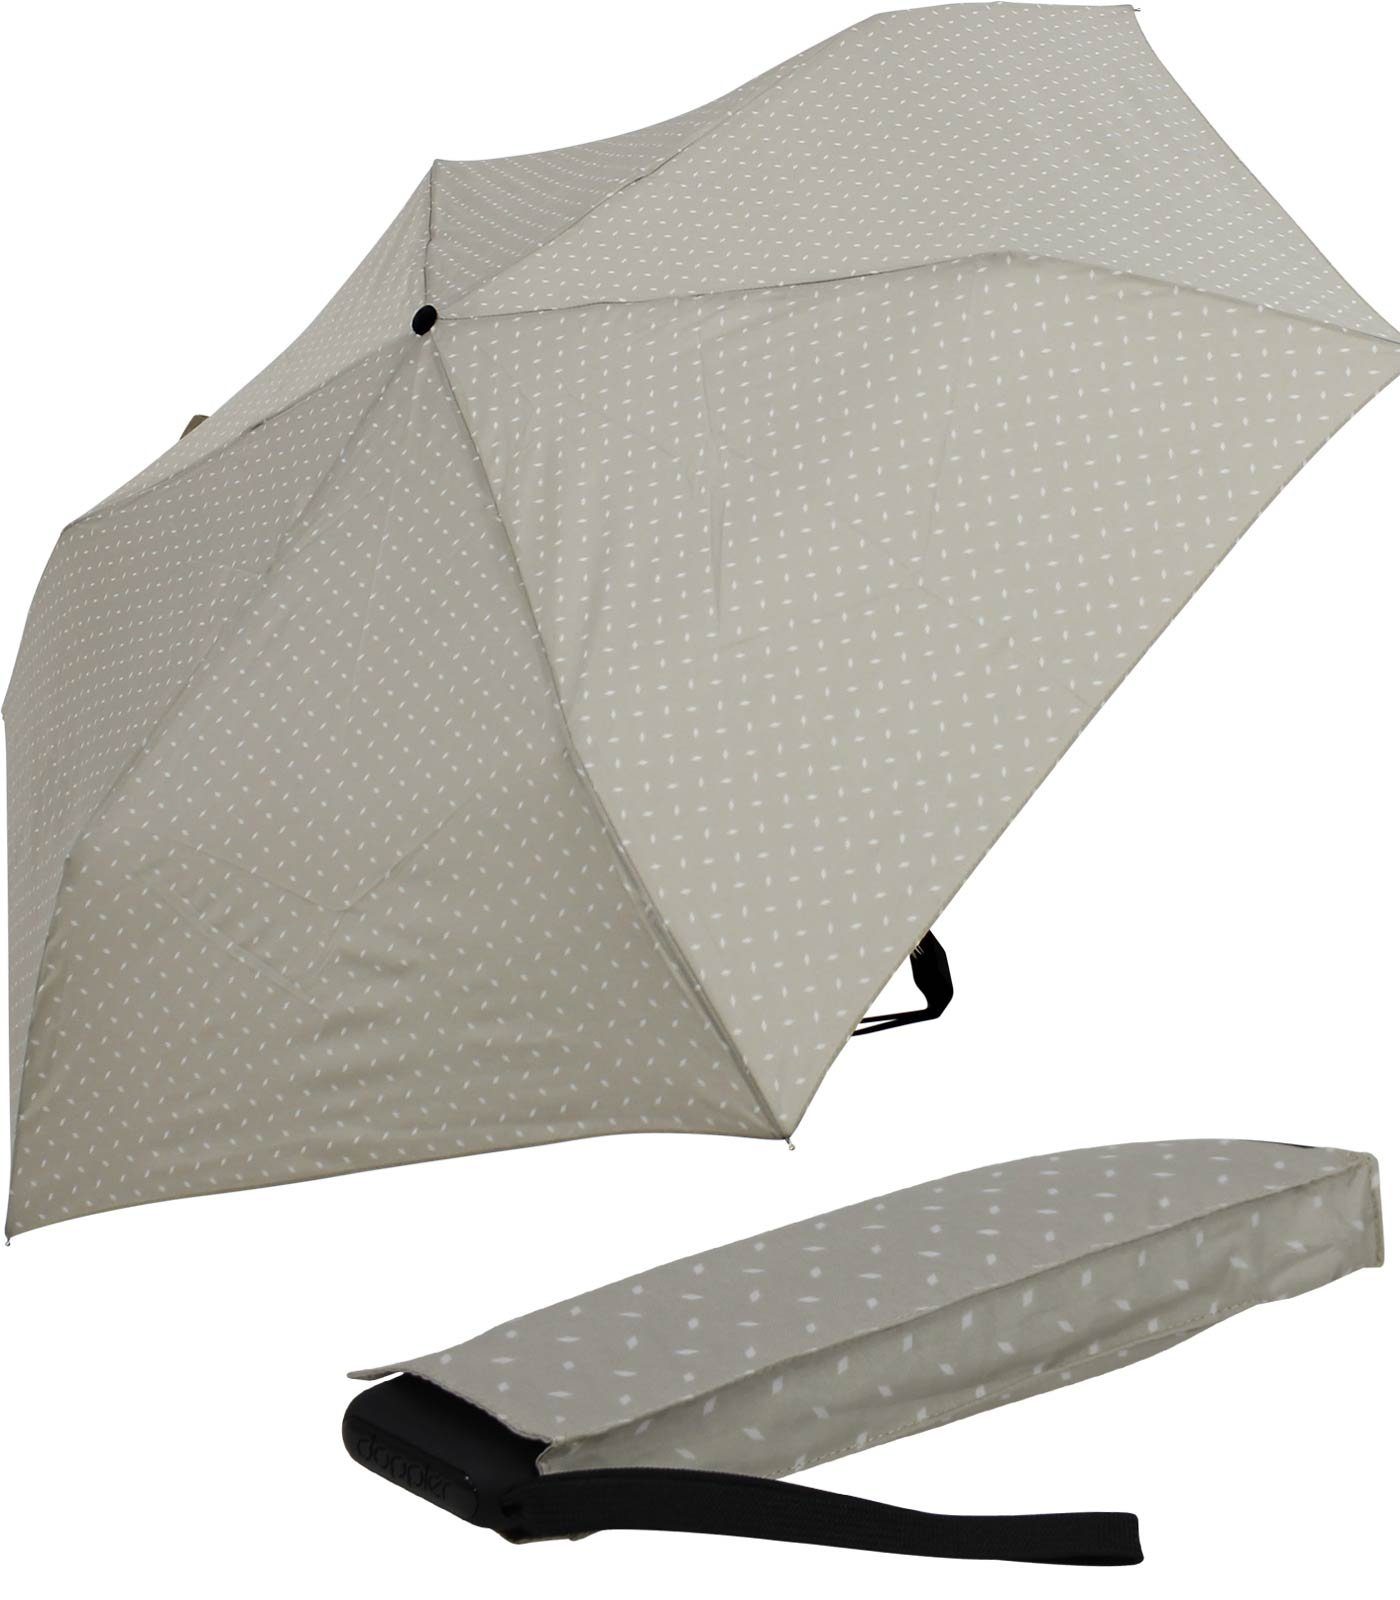 Begleiter treue für flacher jede Tasche, findet überall Platz Taschenregenschirm und doppler® ein leichter dieser Schirm